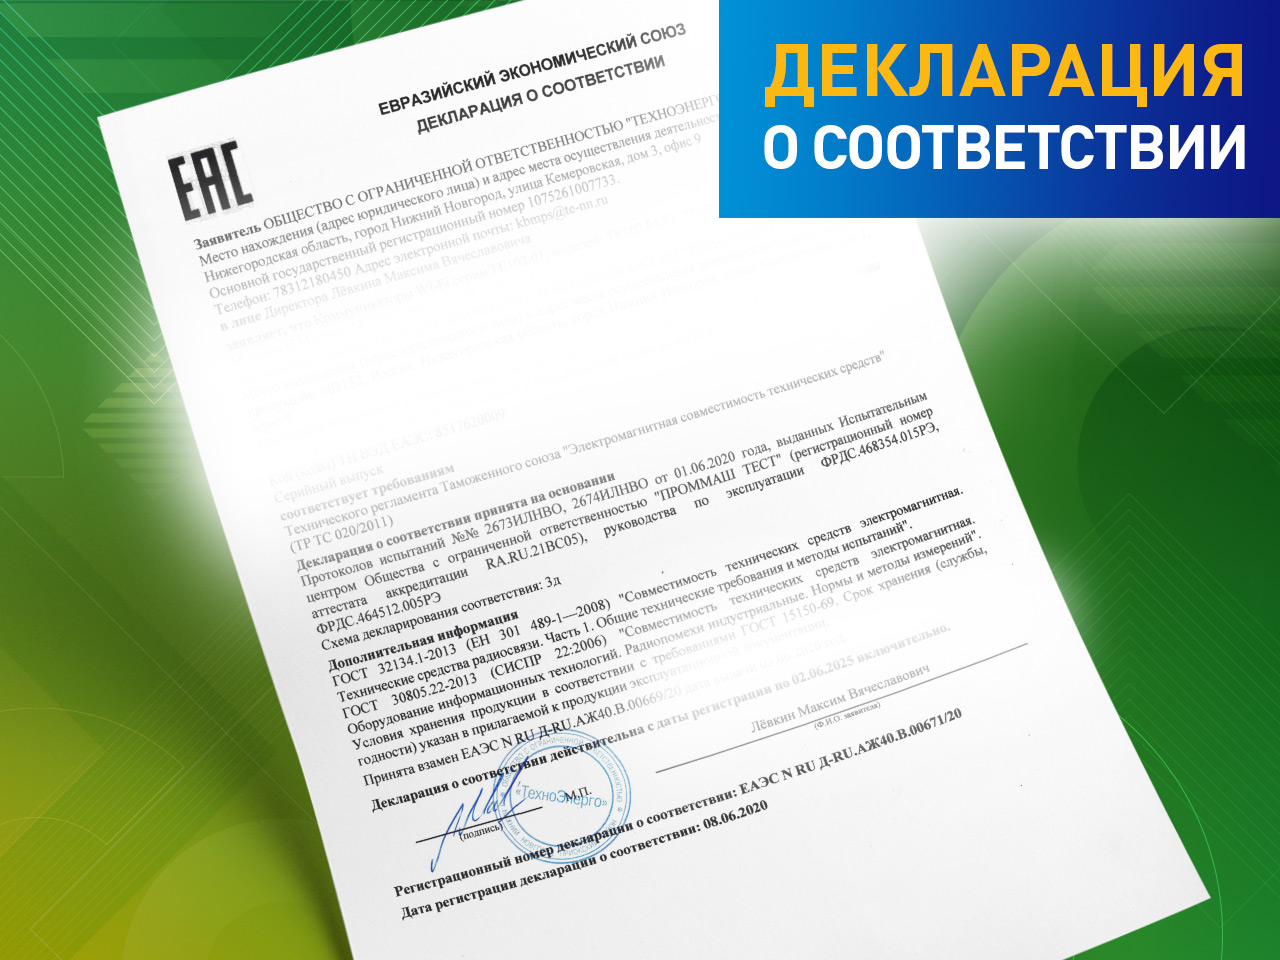 Получение декларации о соответствии на счетчики электроэнергии ПСЧ-4ТМ.06Т